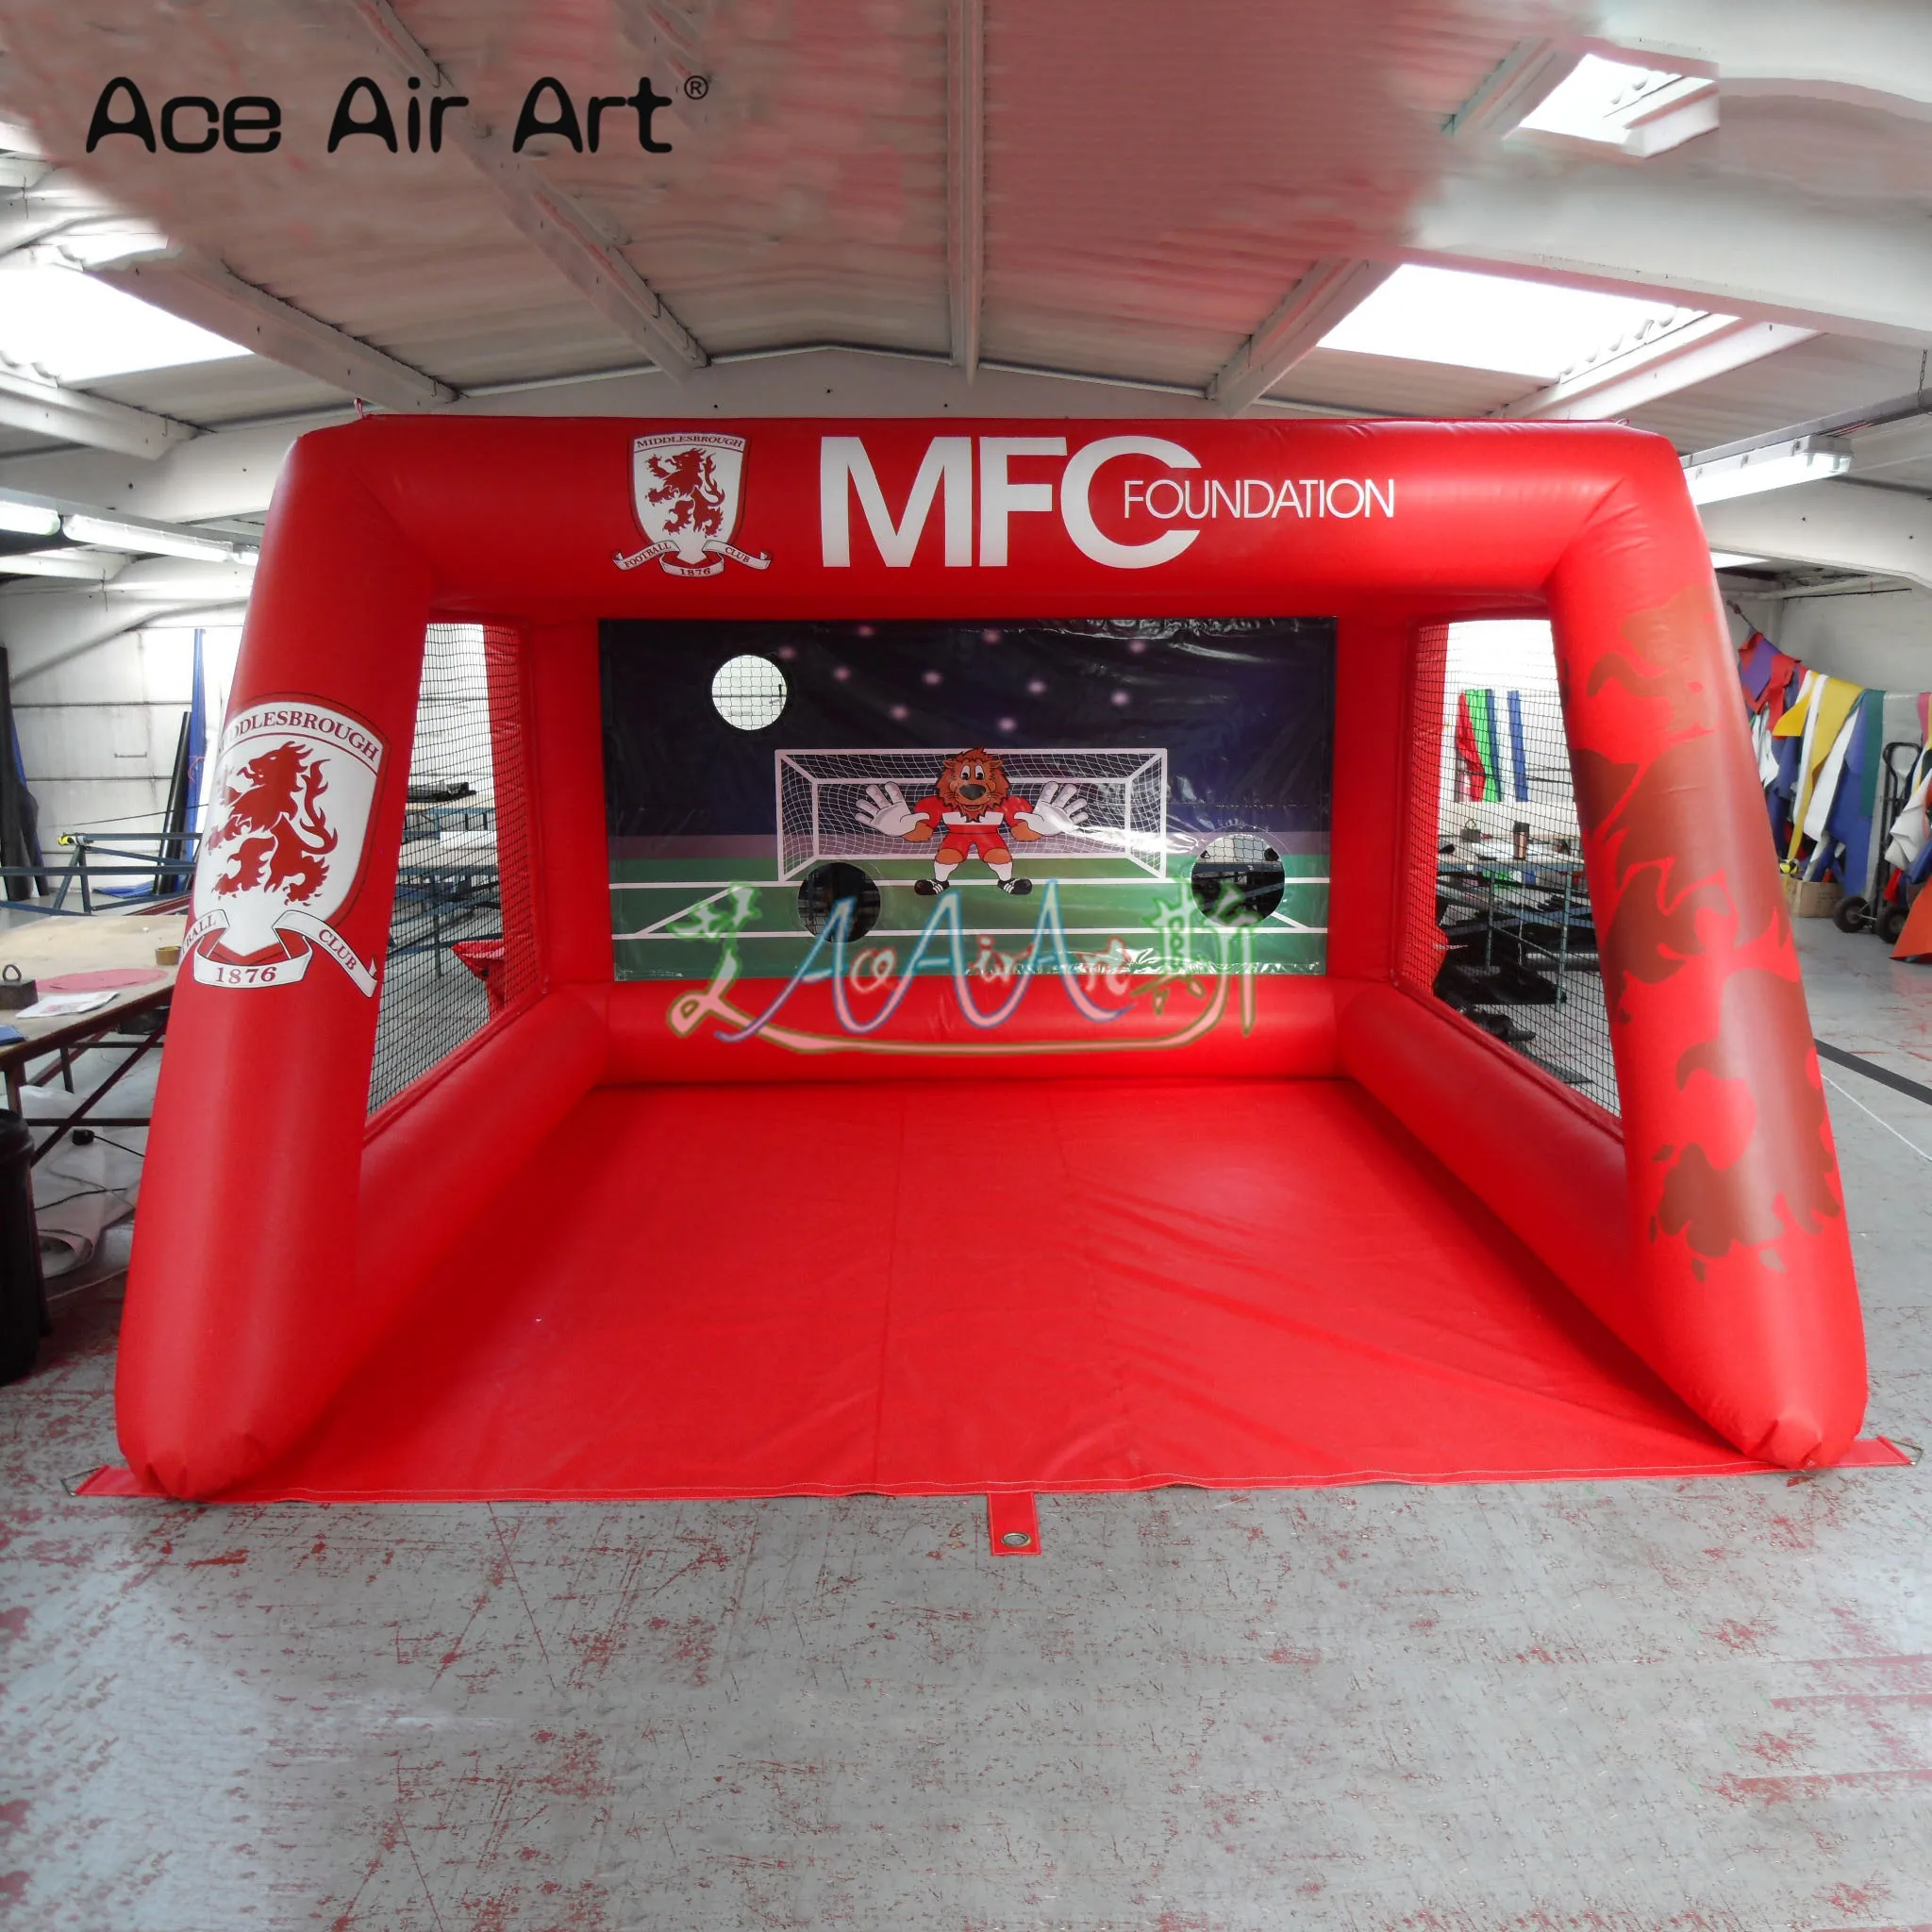 4 x 3 m großes aufblasbares Fußball-Schießspiel, aufgeblasene Fußball-Zielspiele für Kinder, Outdoor-Spaß mit kostenlosem Gebläse